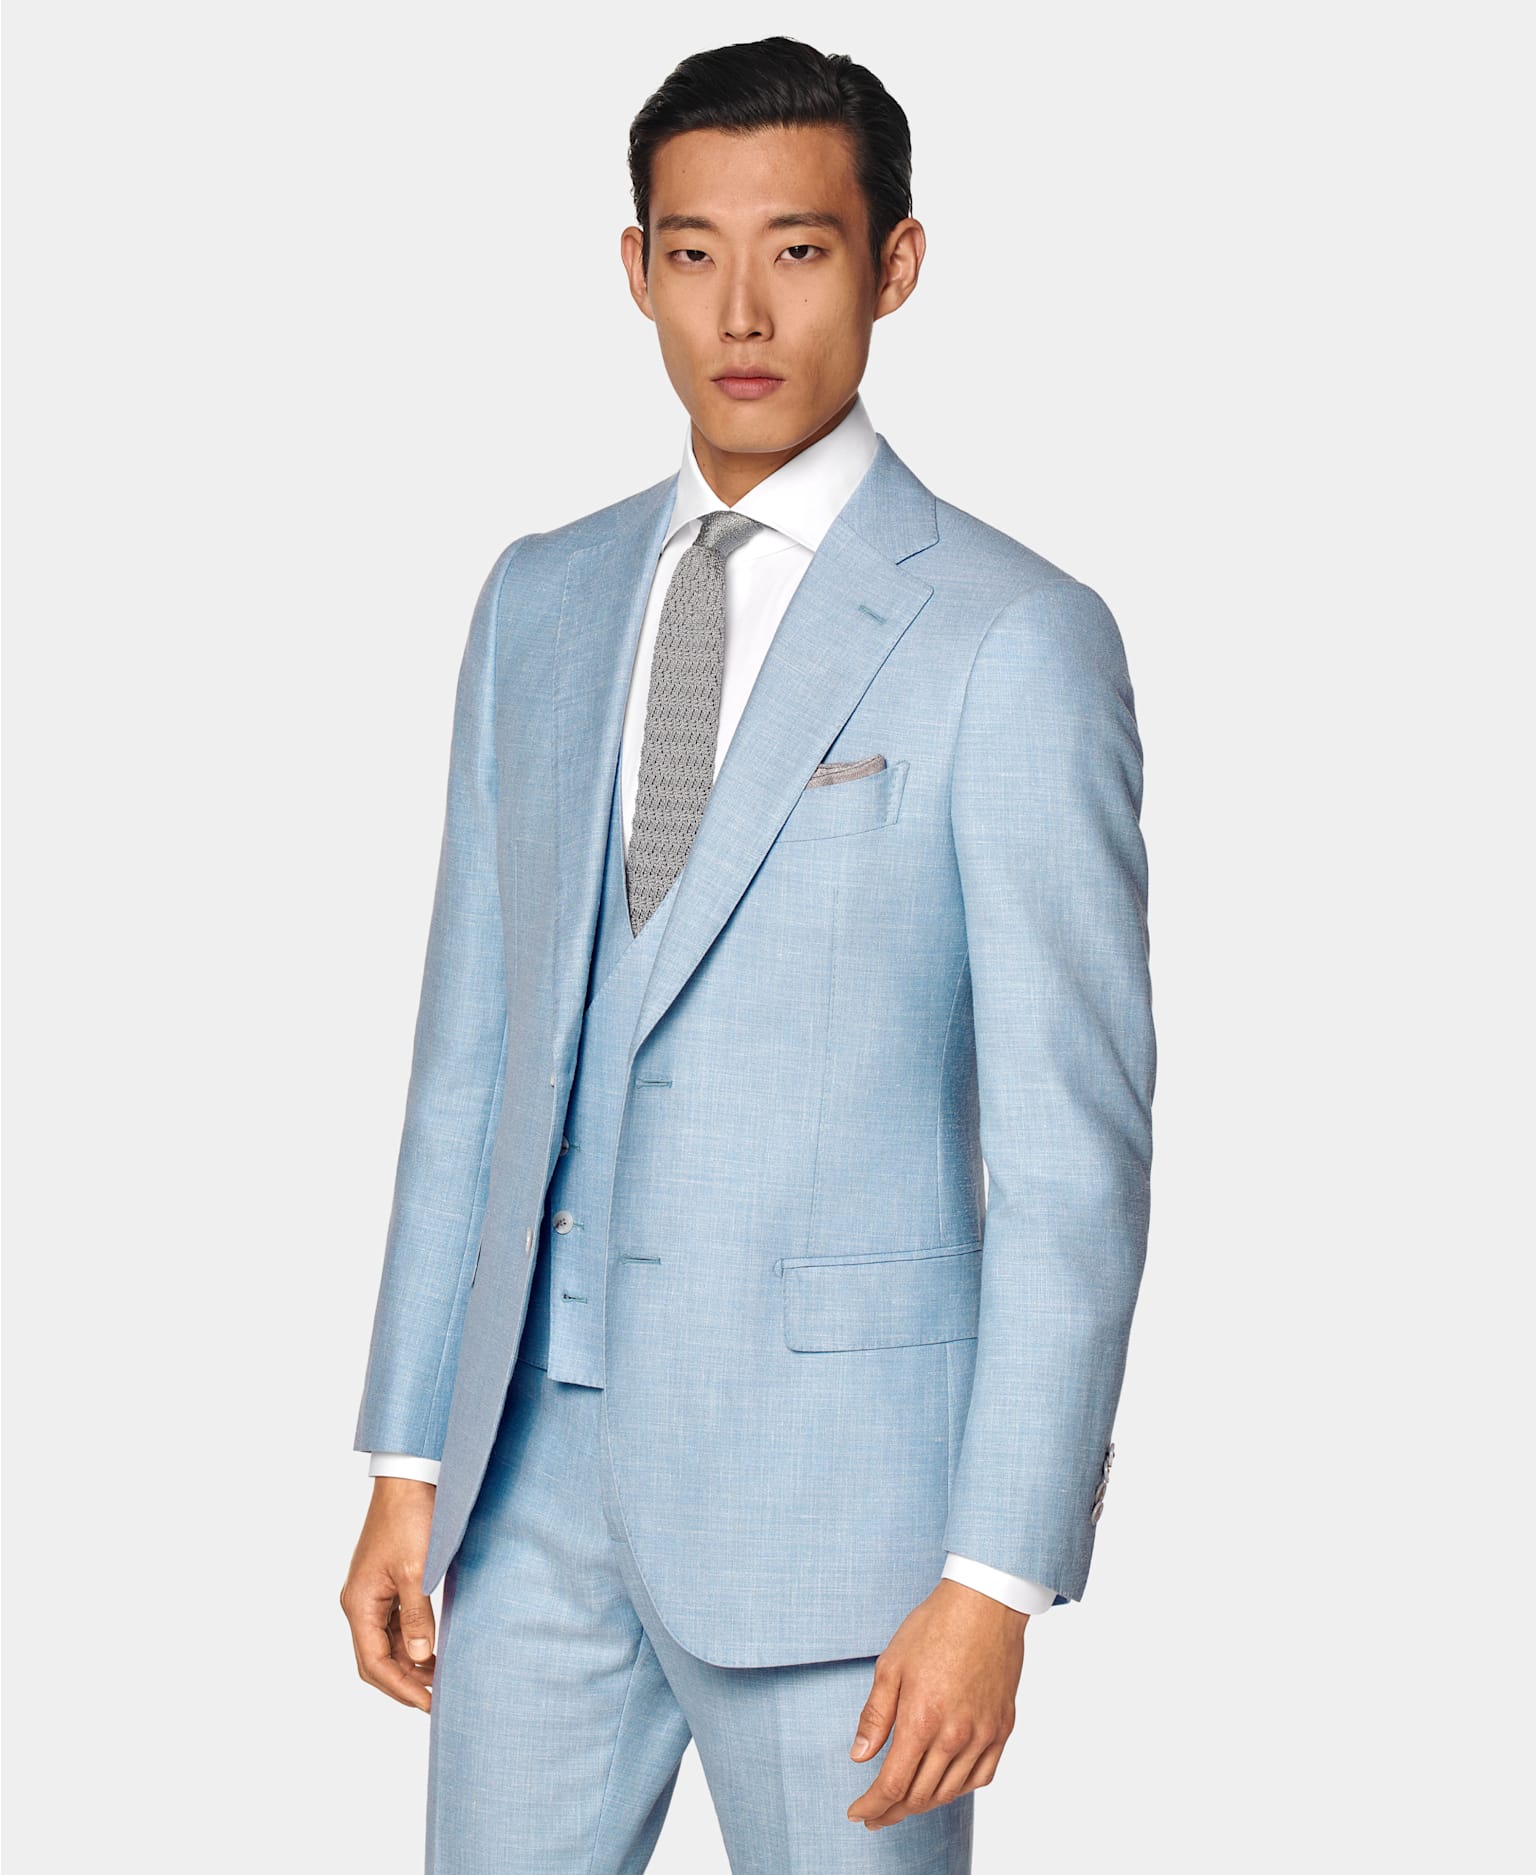 Sommerhochzeit-Outfit für Herren: Hellblauer dreiteiliger Anzug, kombiniert mit weißem Hemd und grauer Strickkrawatte aus Seide.